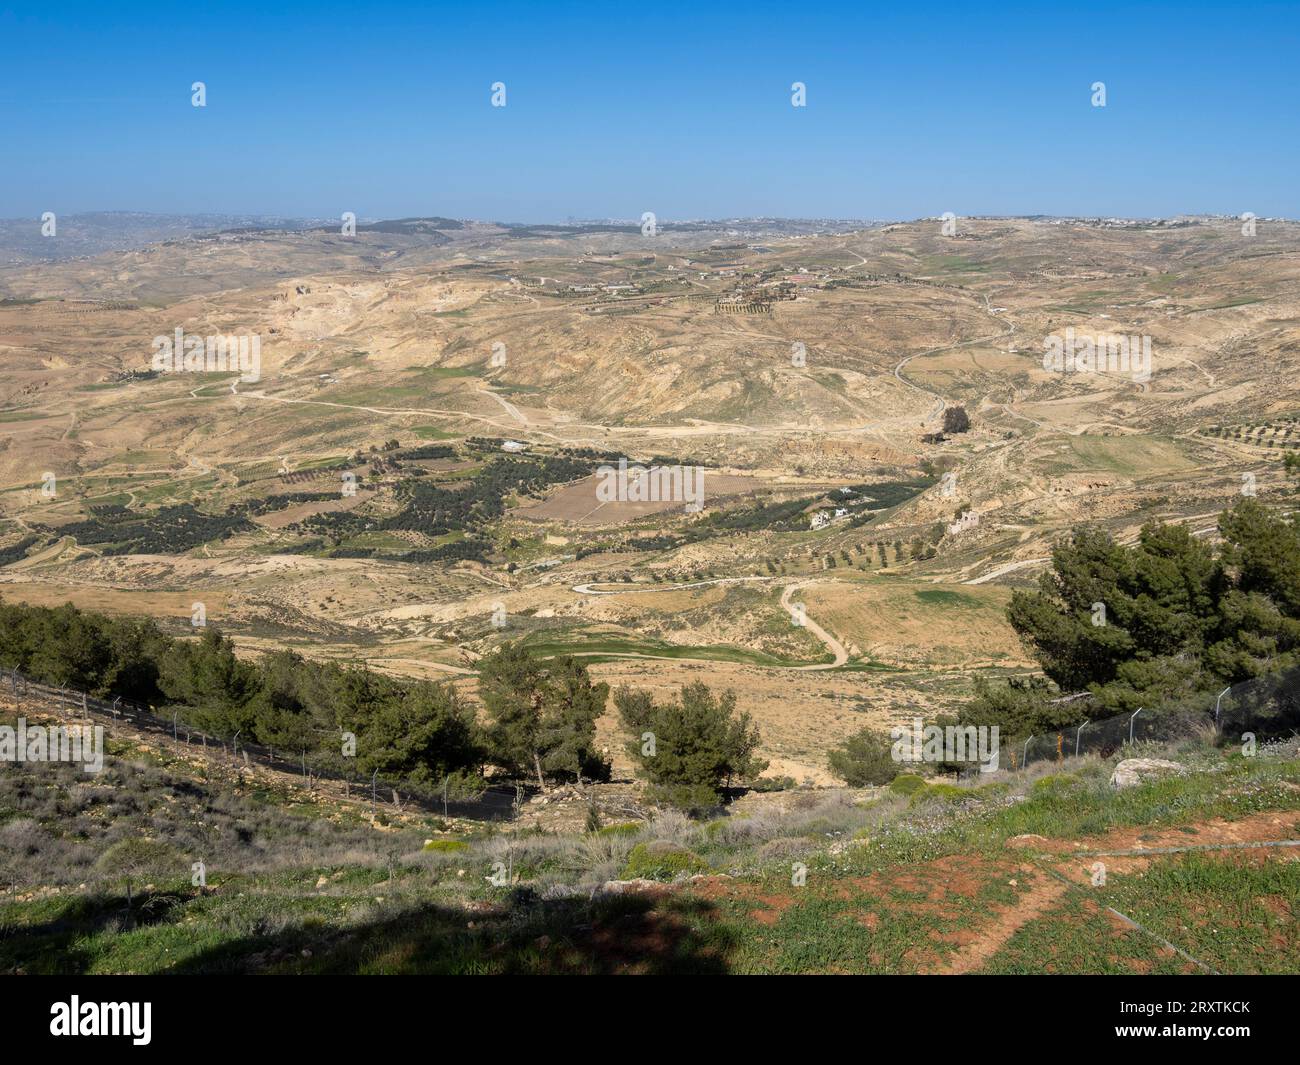 Mont Nebo, mentionné dans la Bible comme le lieu où Moïse a obtenu une vue de la Terre Promise avant sa mort, Jordanie, Moyen-Orient Banque D'Images